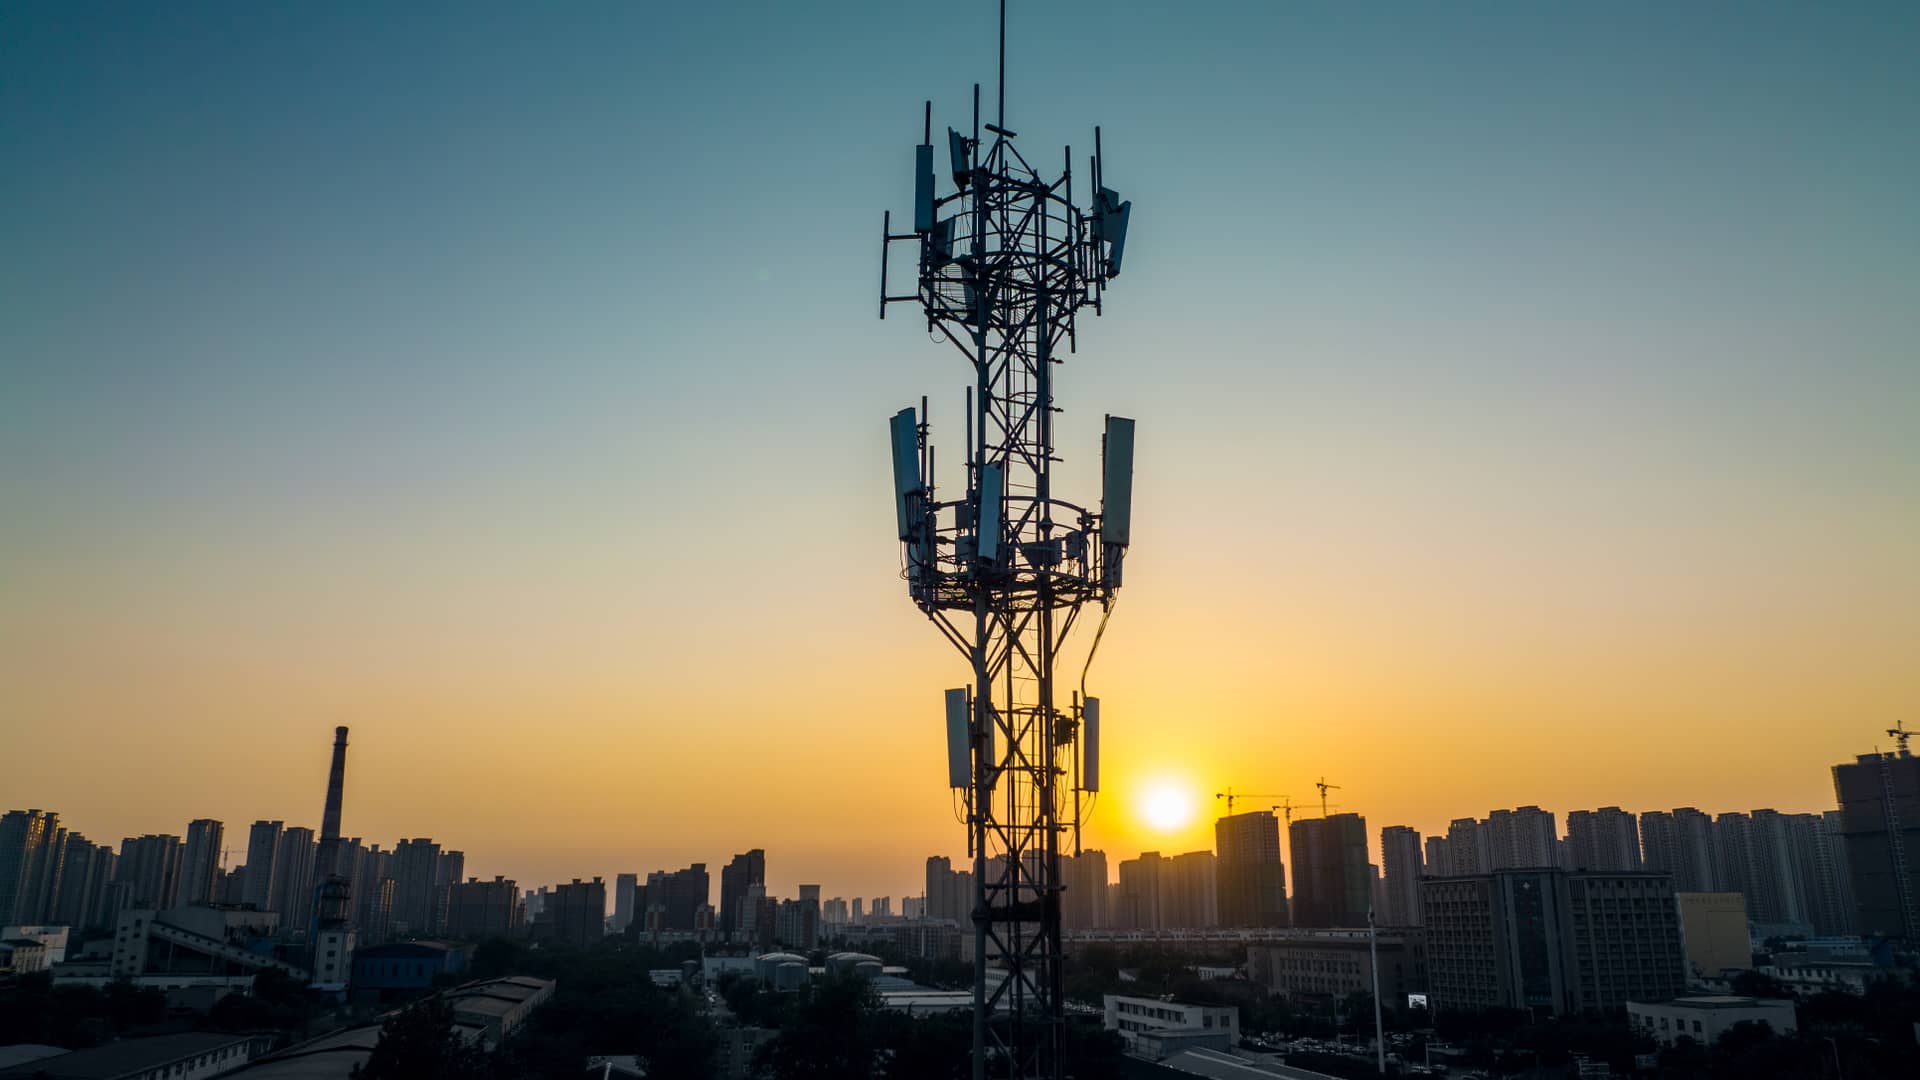 Vista área de torre de comunicaciones de redes celulares indicando la cobertura disponible con movistar